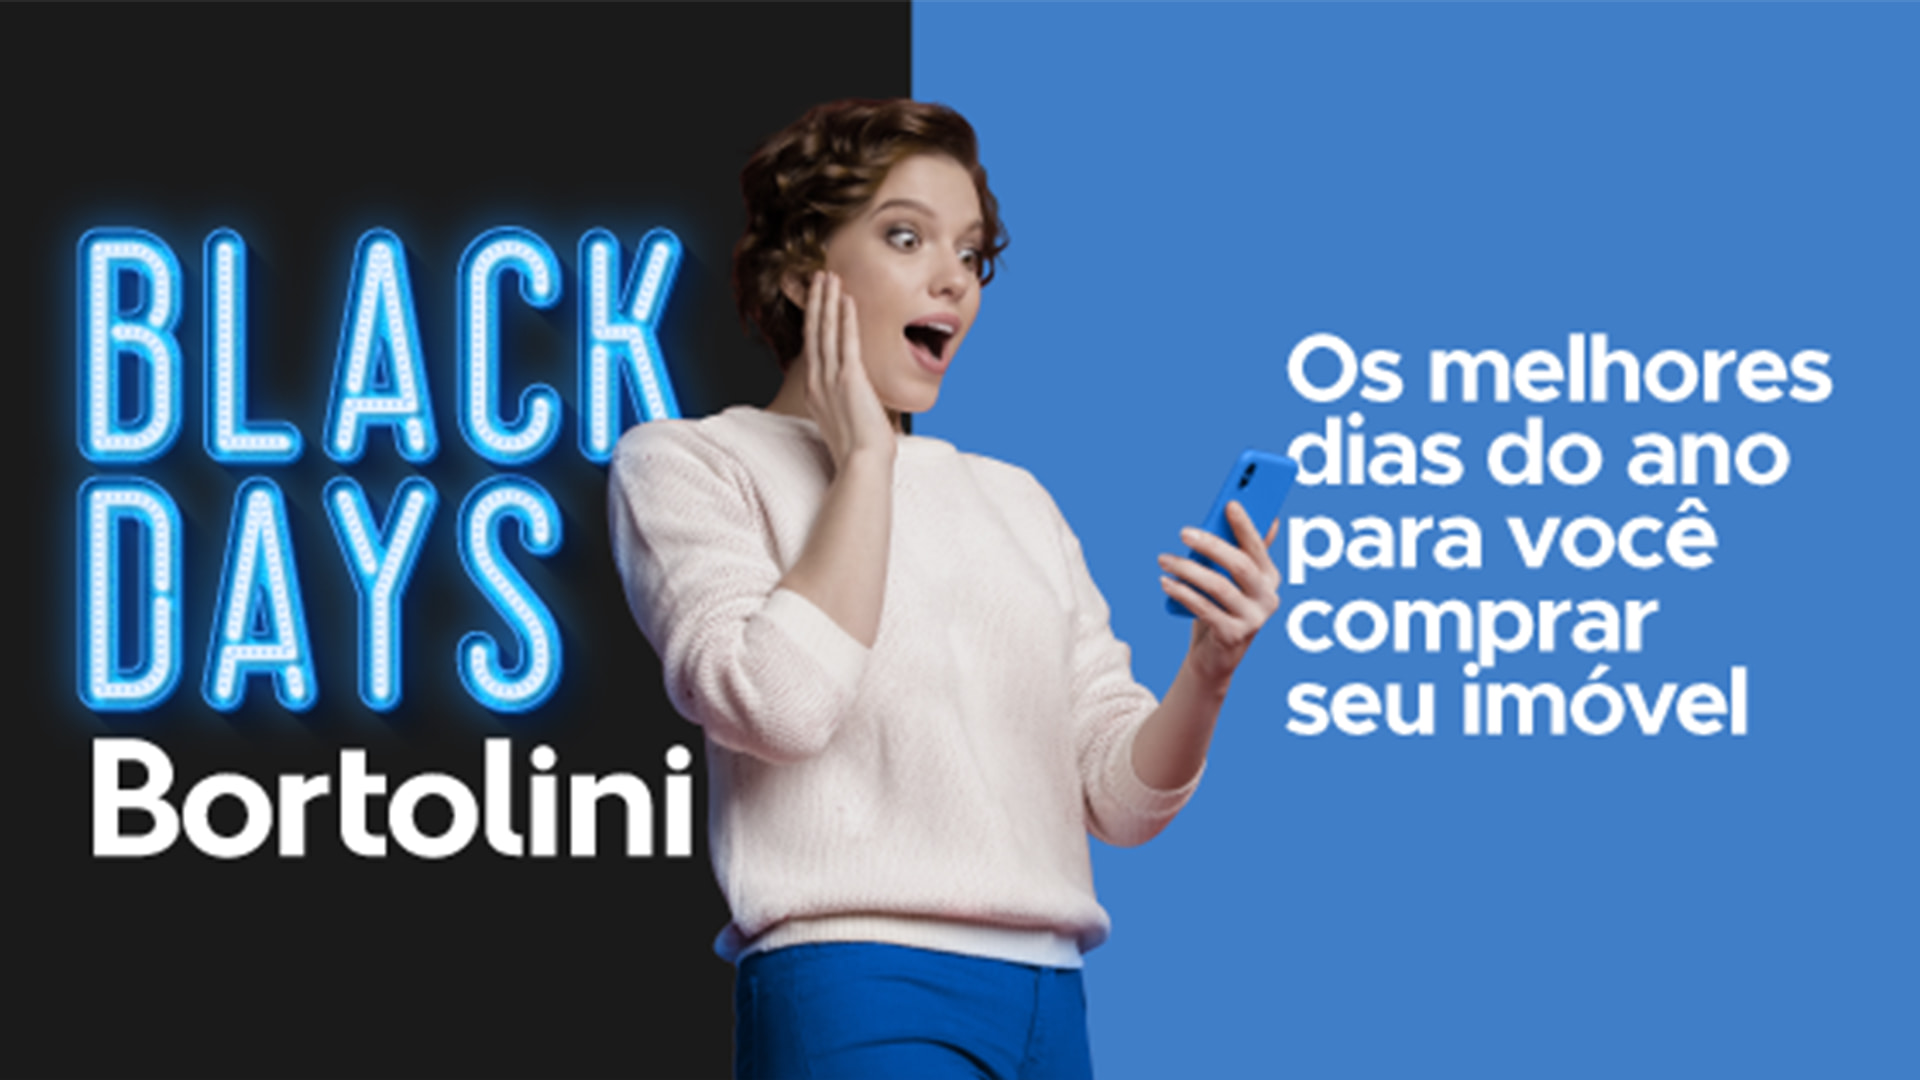 Bortolini Imóveis lança Campanha Black Days